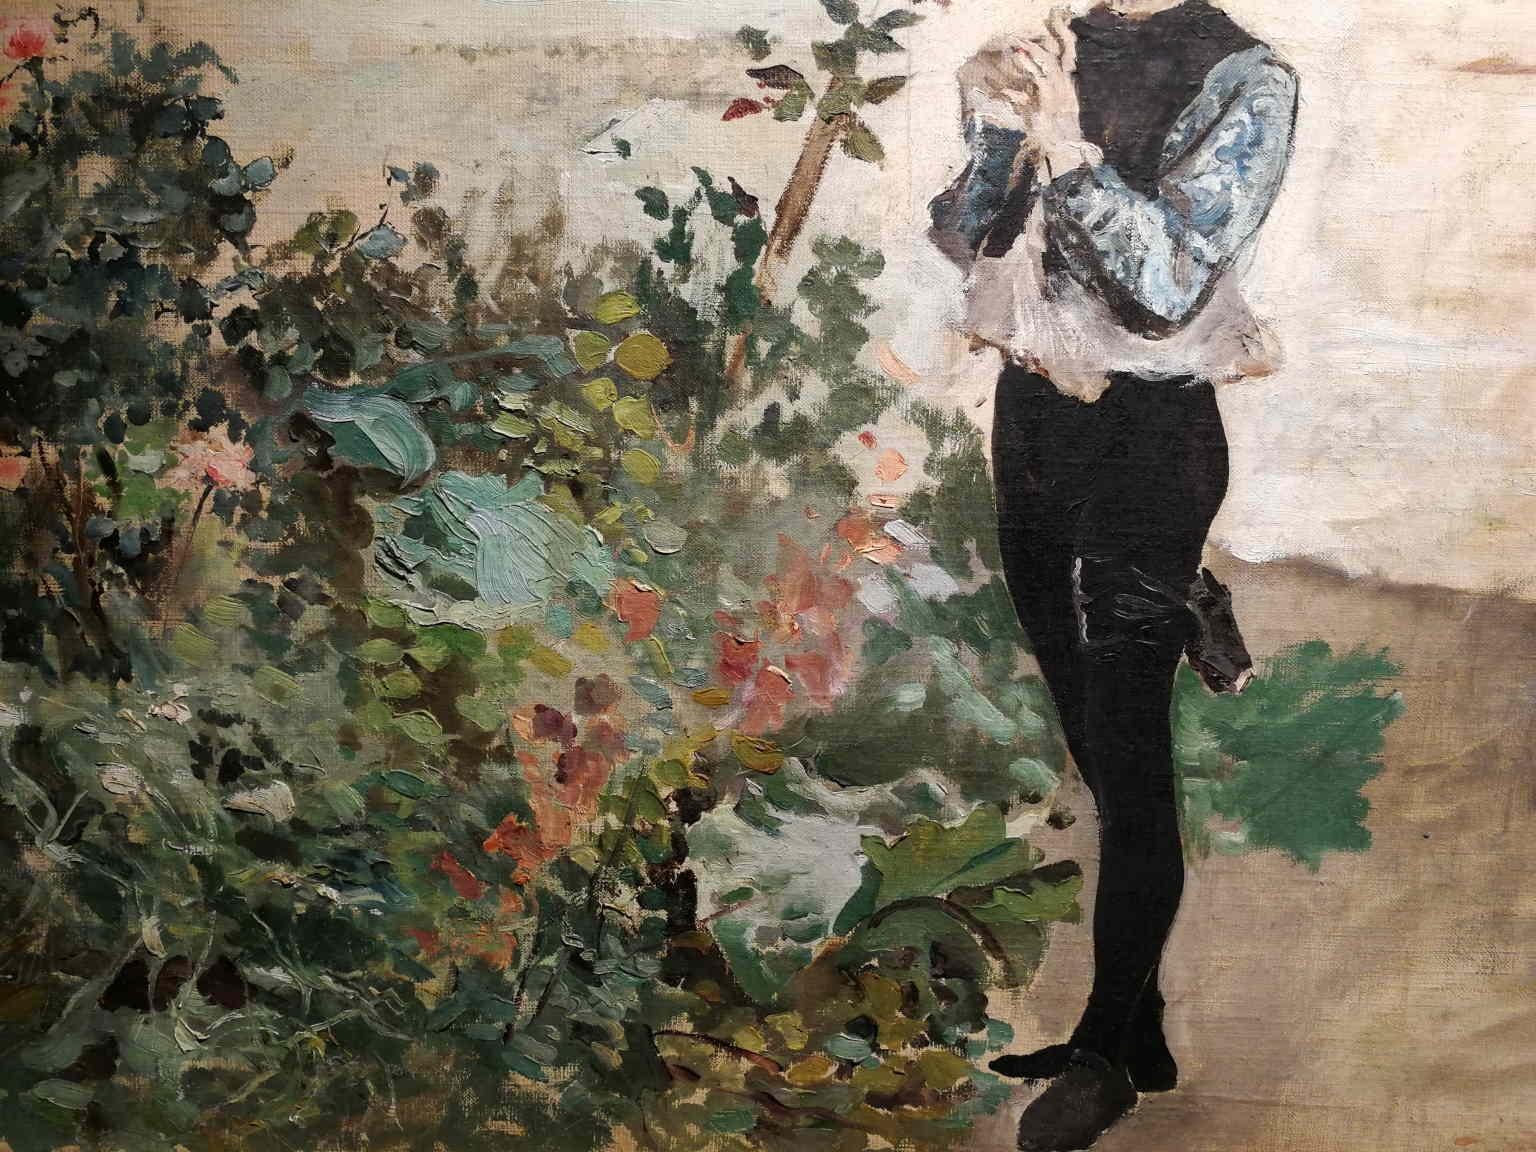 Florentine Signed Gordigiani Portrait Landscape Painting 19th century oil canvas For Sale 3